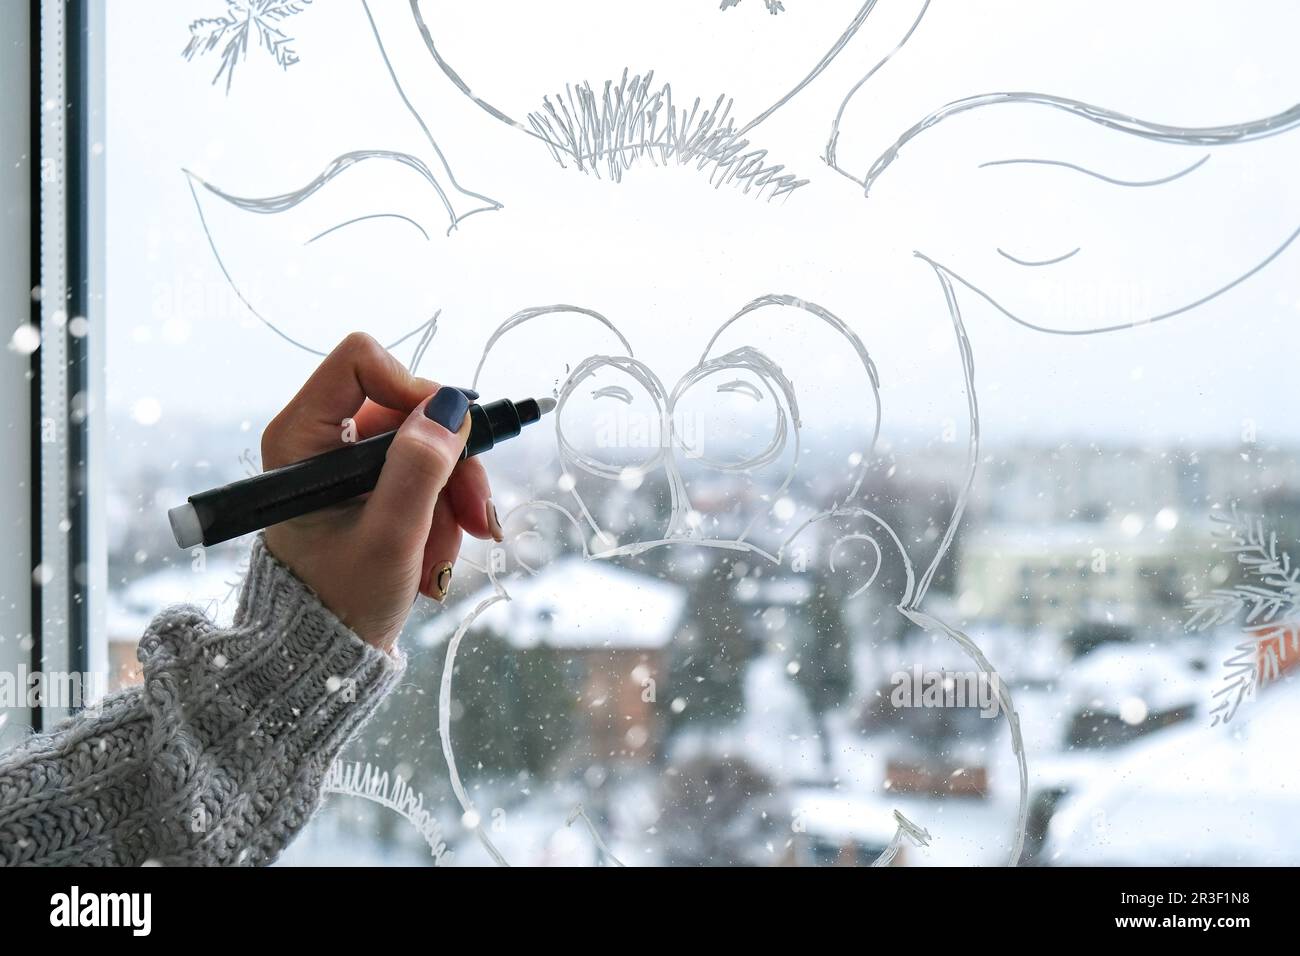 Femme peinture à la main cerf de Noël peint sur verre de fenêtre. Décoration d'hiver de Noël sur la vitre. Motif de cerf blanc. Banque D'Images